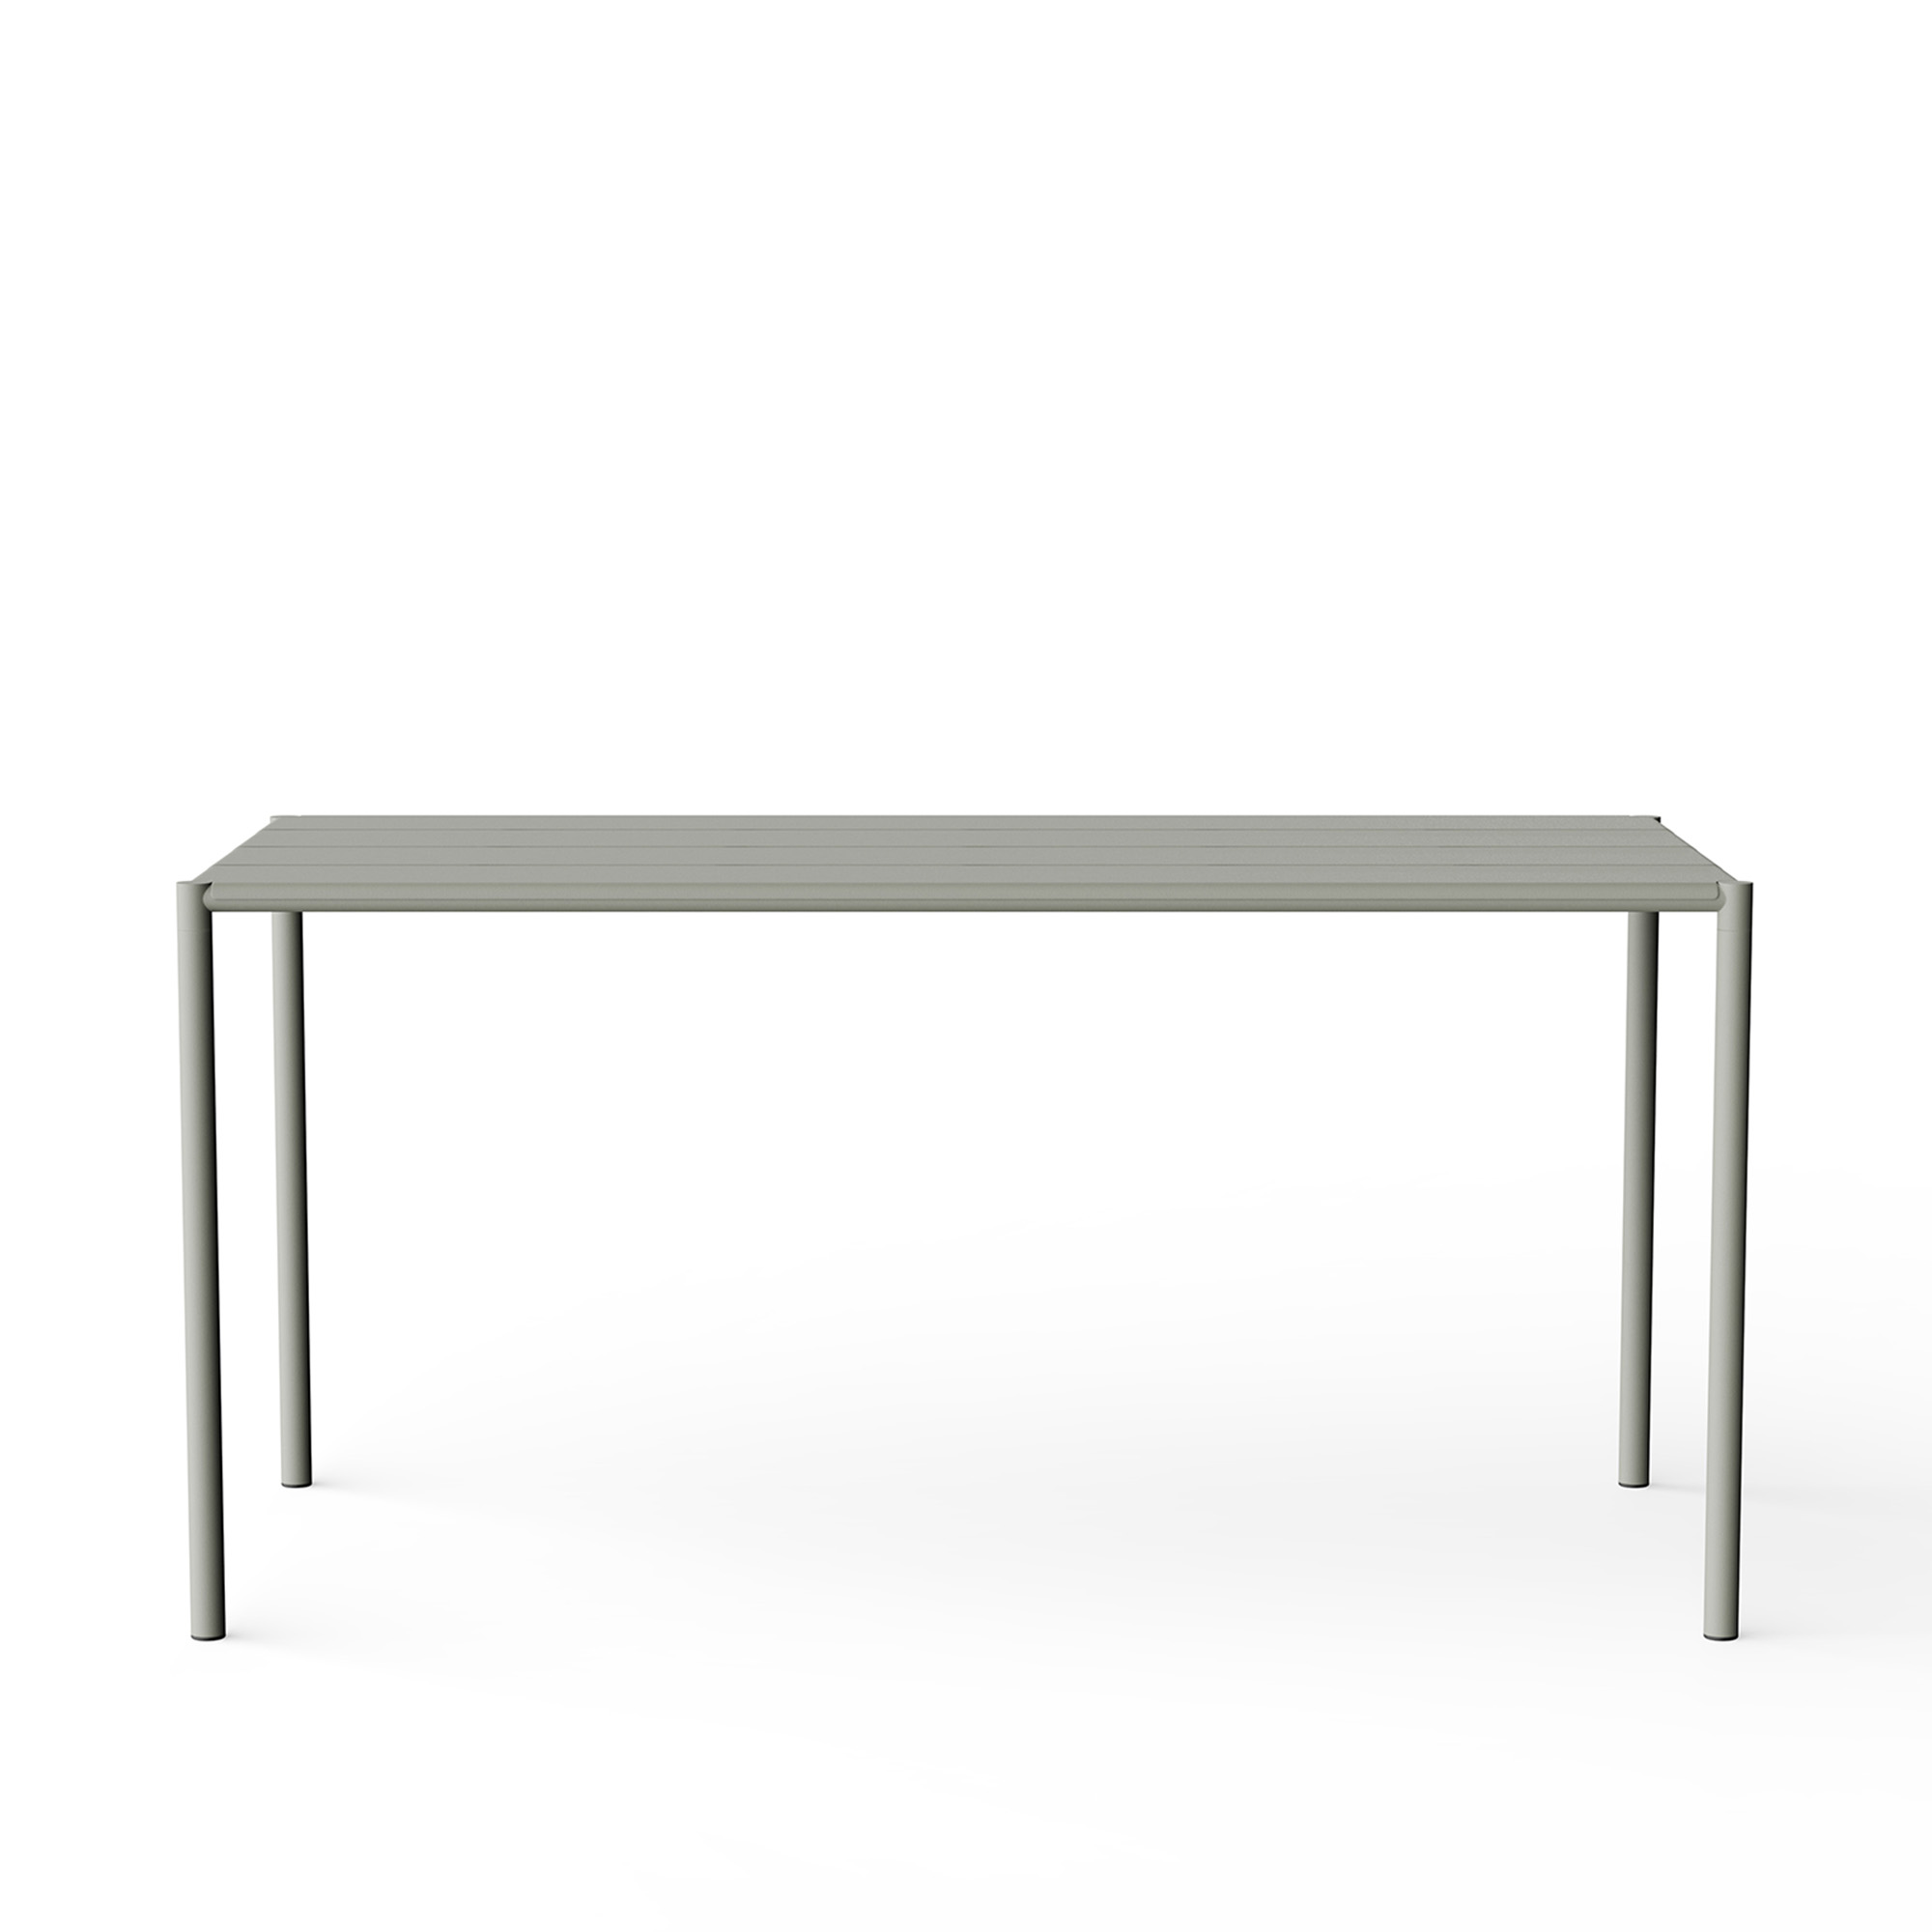 Sine - Dining Table 1510 x 755 Grey